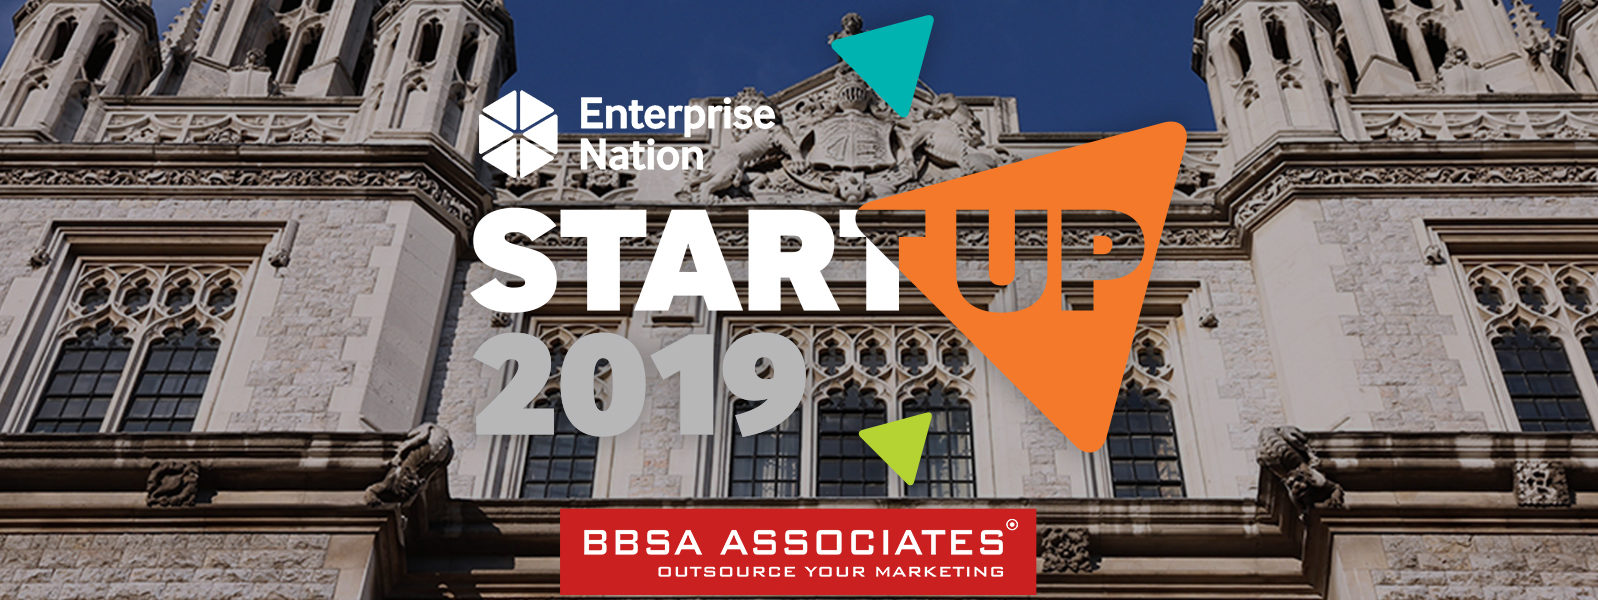 Enterprise Nation Startup Event 2019